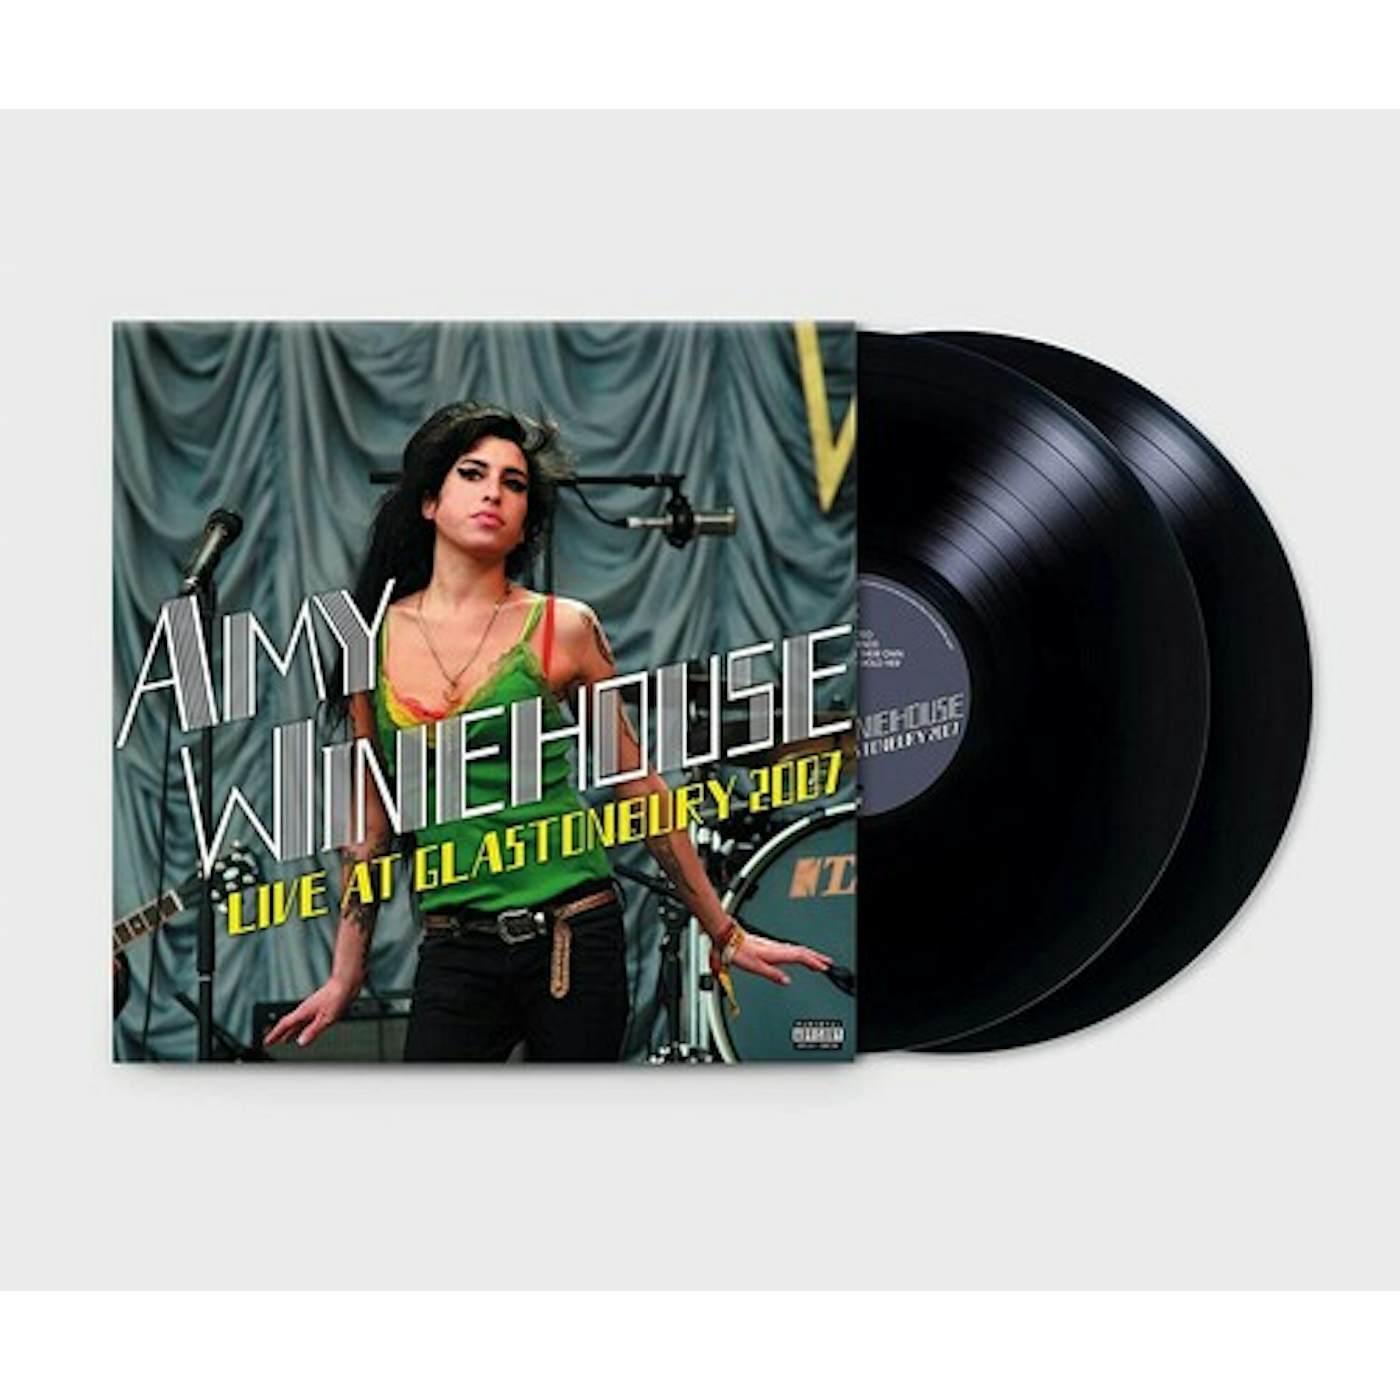 Amy Winehouse Live At Glastonbury 2007 Vinyl Record